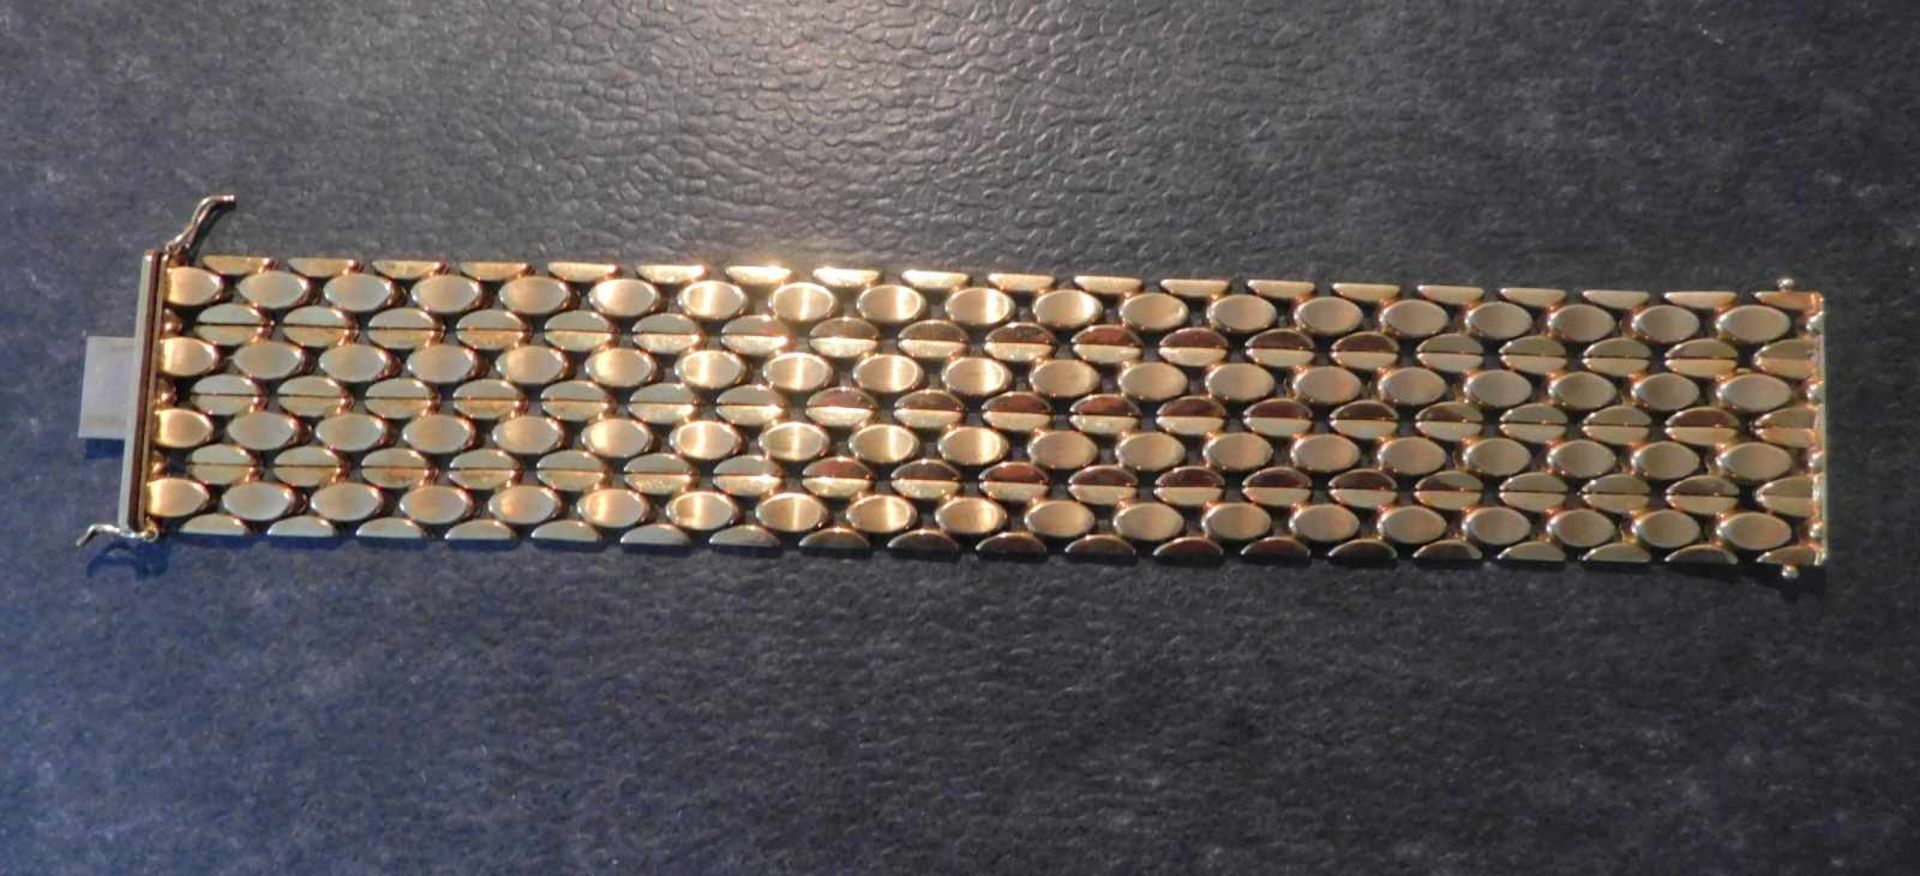 Armband, 585 Gelbgold, 3,5 cm breit, 50,2 g, Steckschloss mit 2 SicherheitsachtenLänge 19,7 cm,